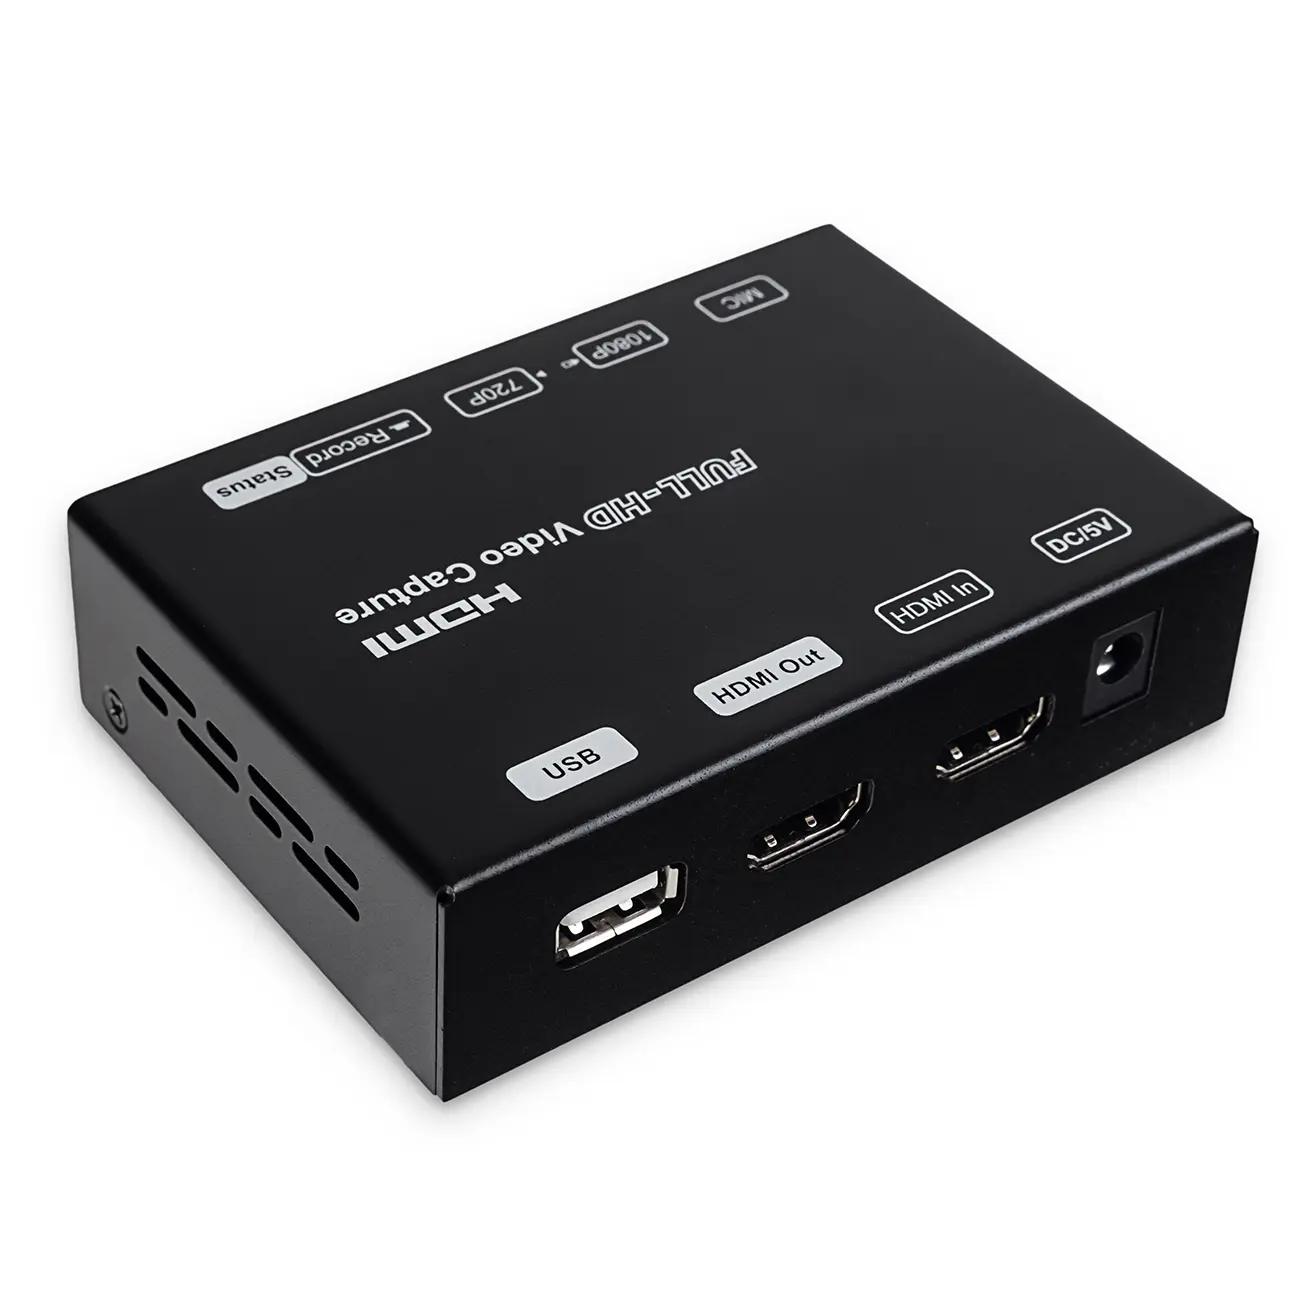 Grabber HDMI Spacetronik SP-HVG01 720p/1080p